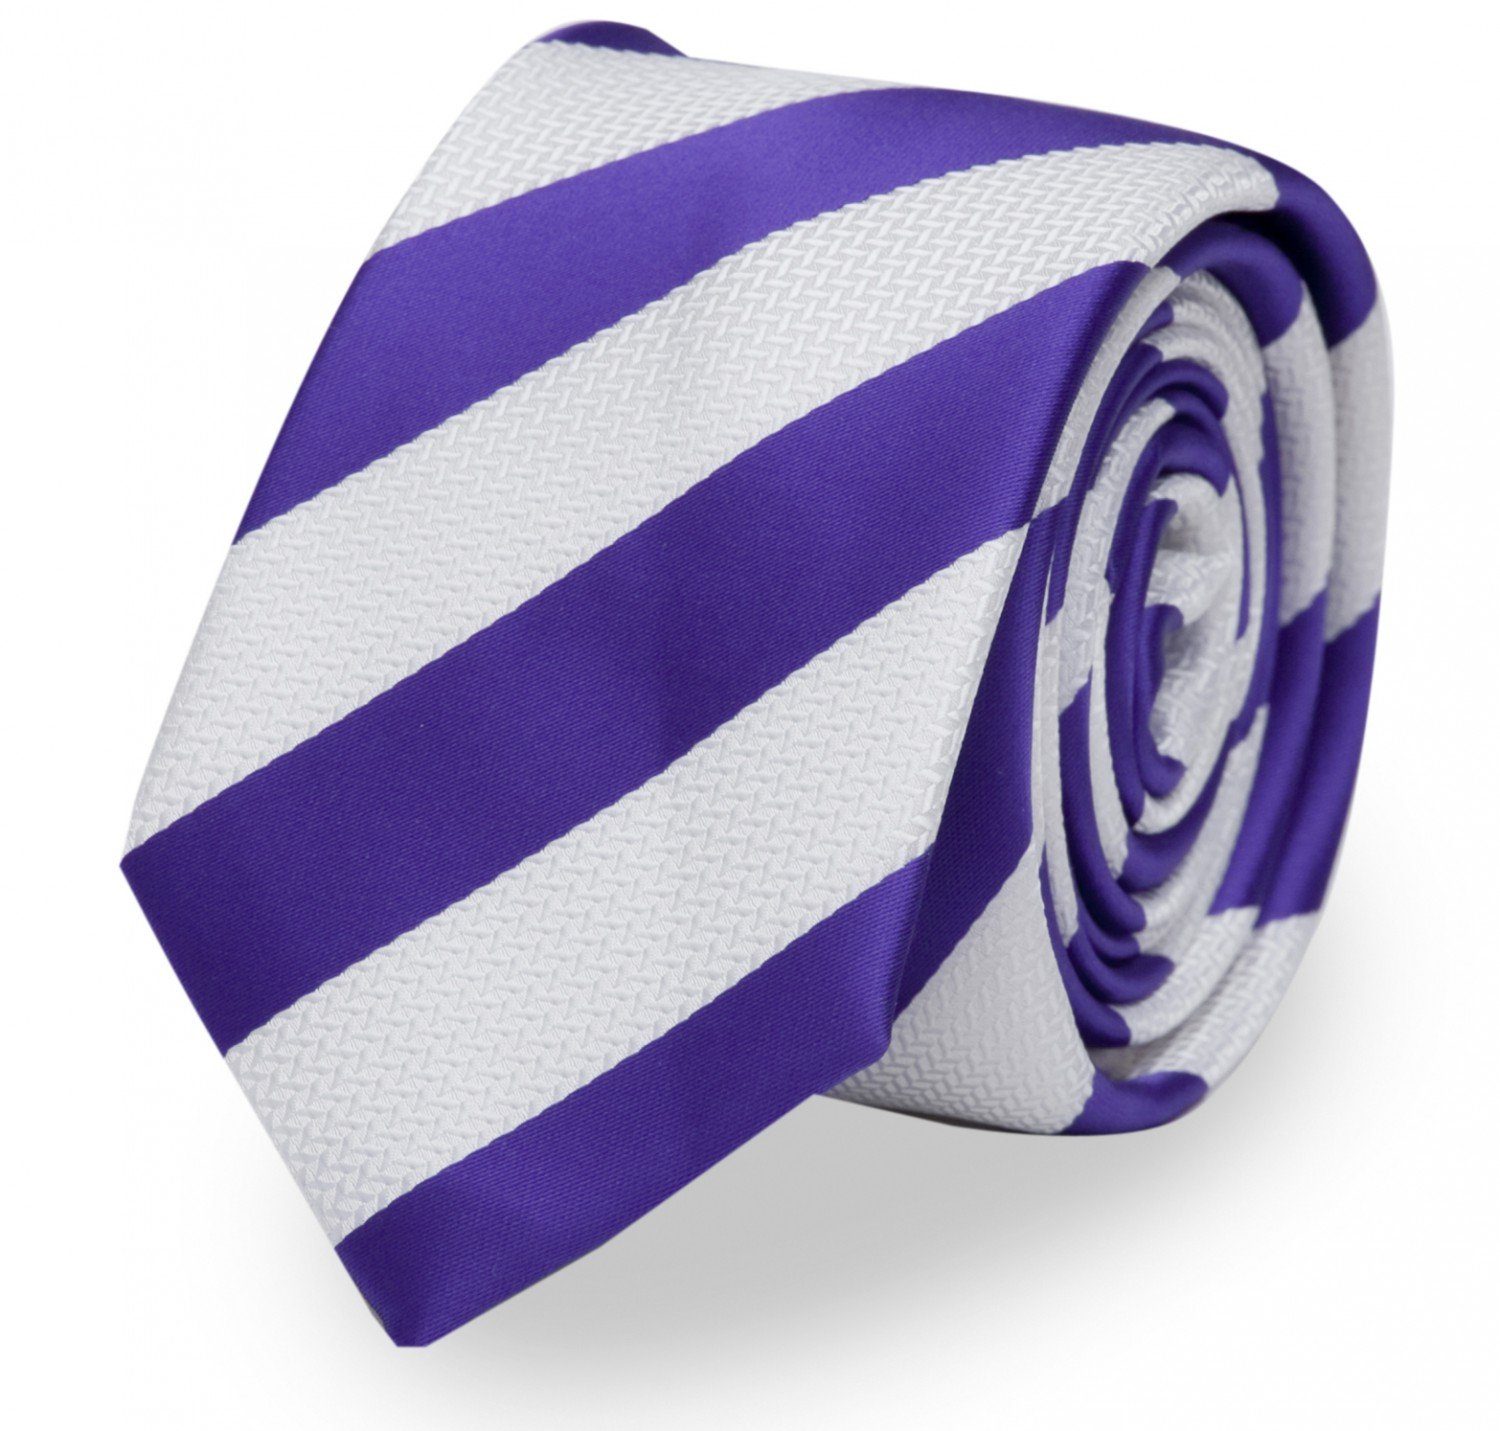 Fabio Farini Krawatte gestreifte Herren Krawatte - Tie mit Streifen in 6cm oder 8cm Breite (ohne Box, Gestreift) Schmal (6cm), Weiß/Violett